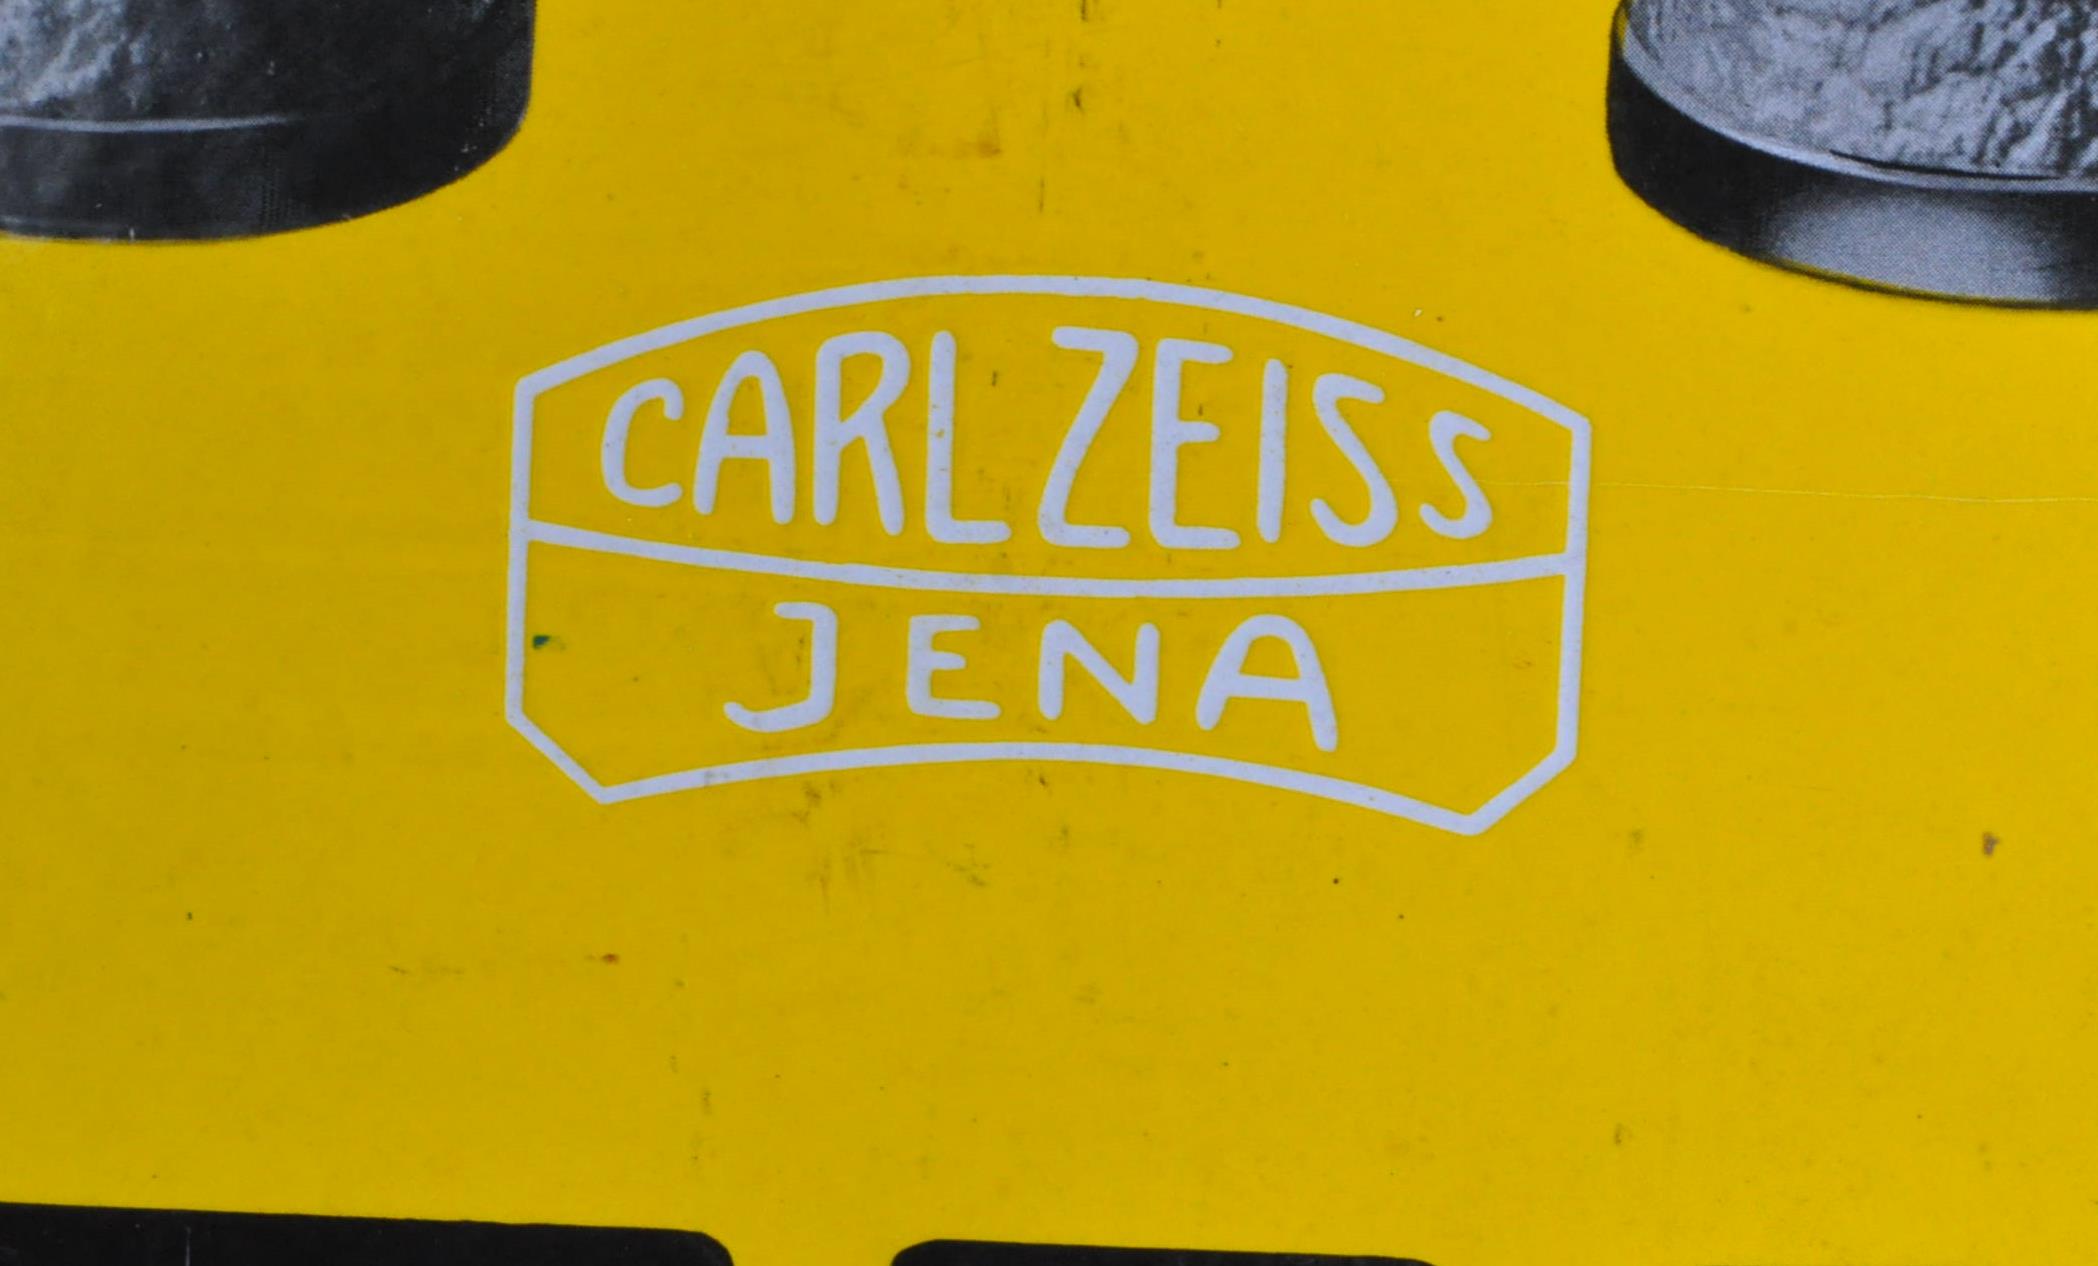 CARL ZEISS - ZEISS - ORIGINAL C1930S ENAMEL ADVERTISING SIGN - Image 4 of 6